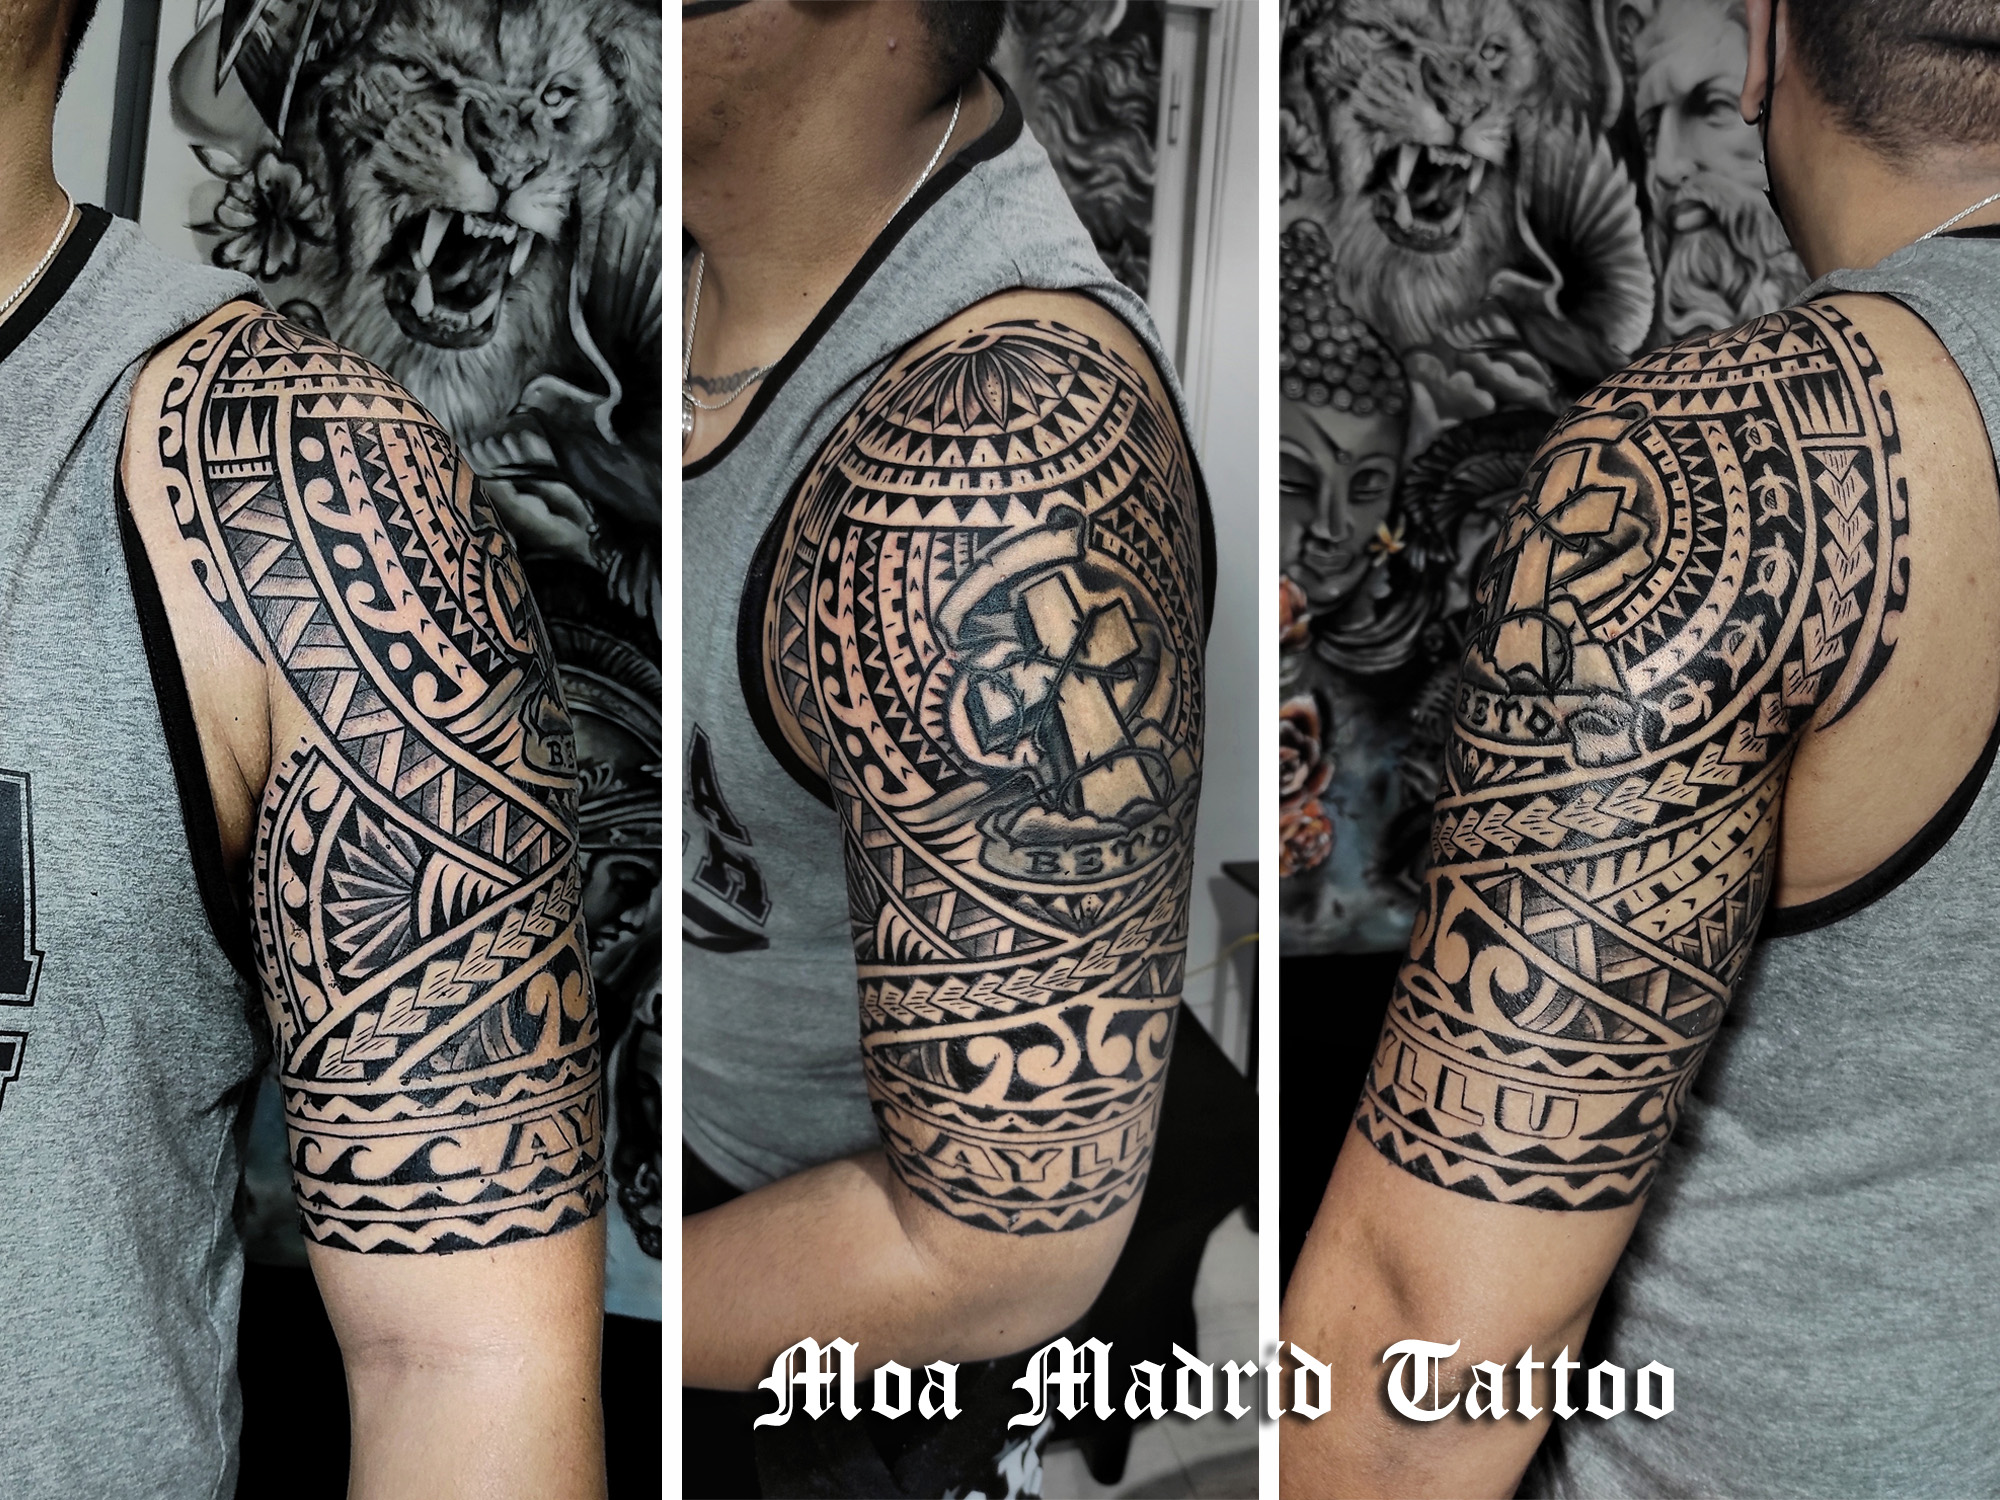 Nuevo maorí rodeando el brazo y su anterior tatuaje de Cruz que quería conservar